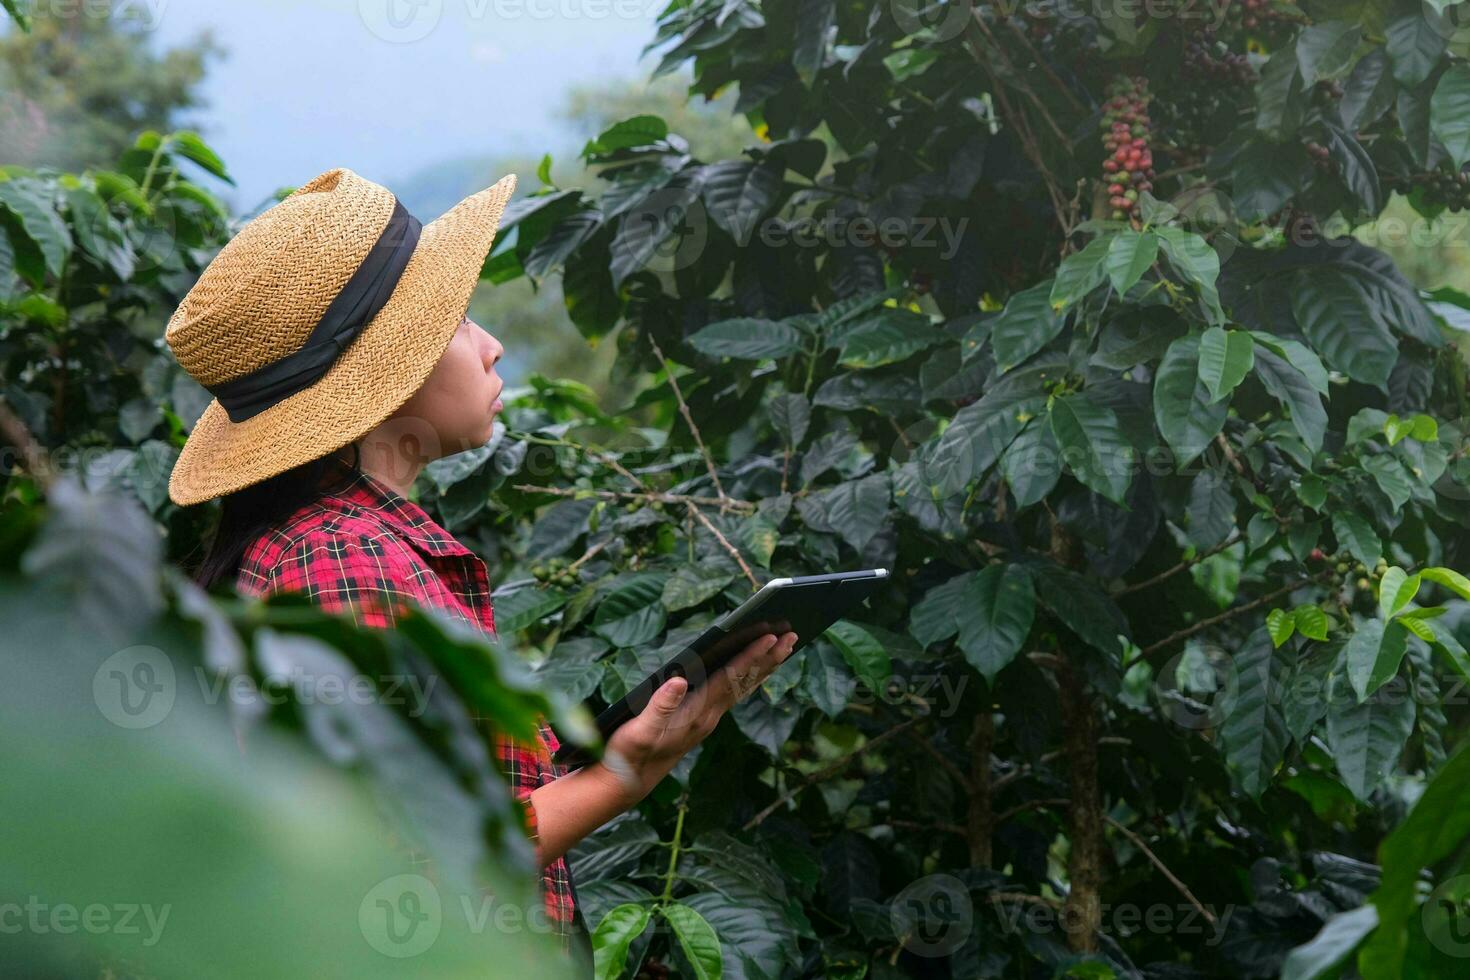 agricultor asiático moderno usando tablet digital e verificando grãos de café maduros na plantação de café. aplicação de tecnologia moderna no conceito de atividade de cultivo agrícola. foto